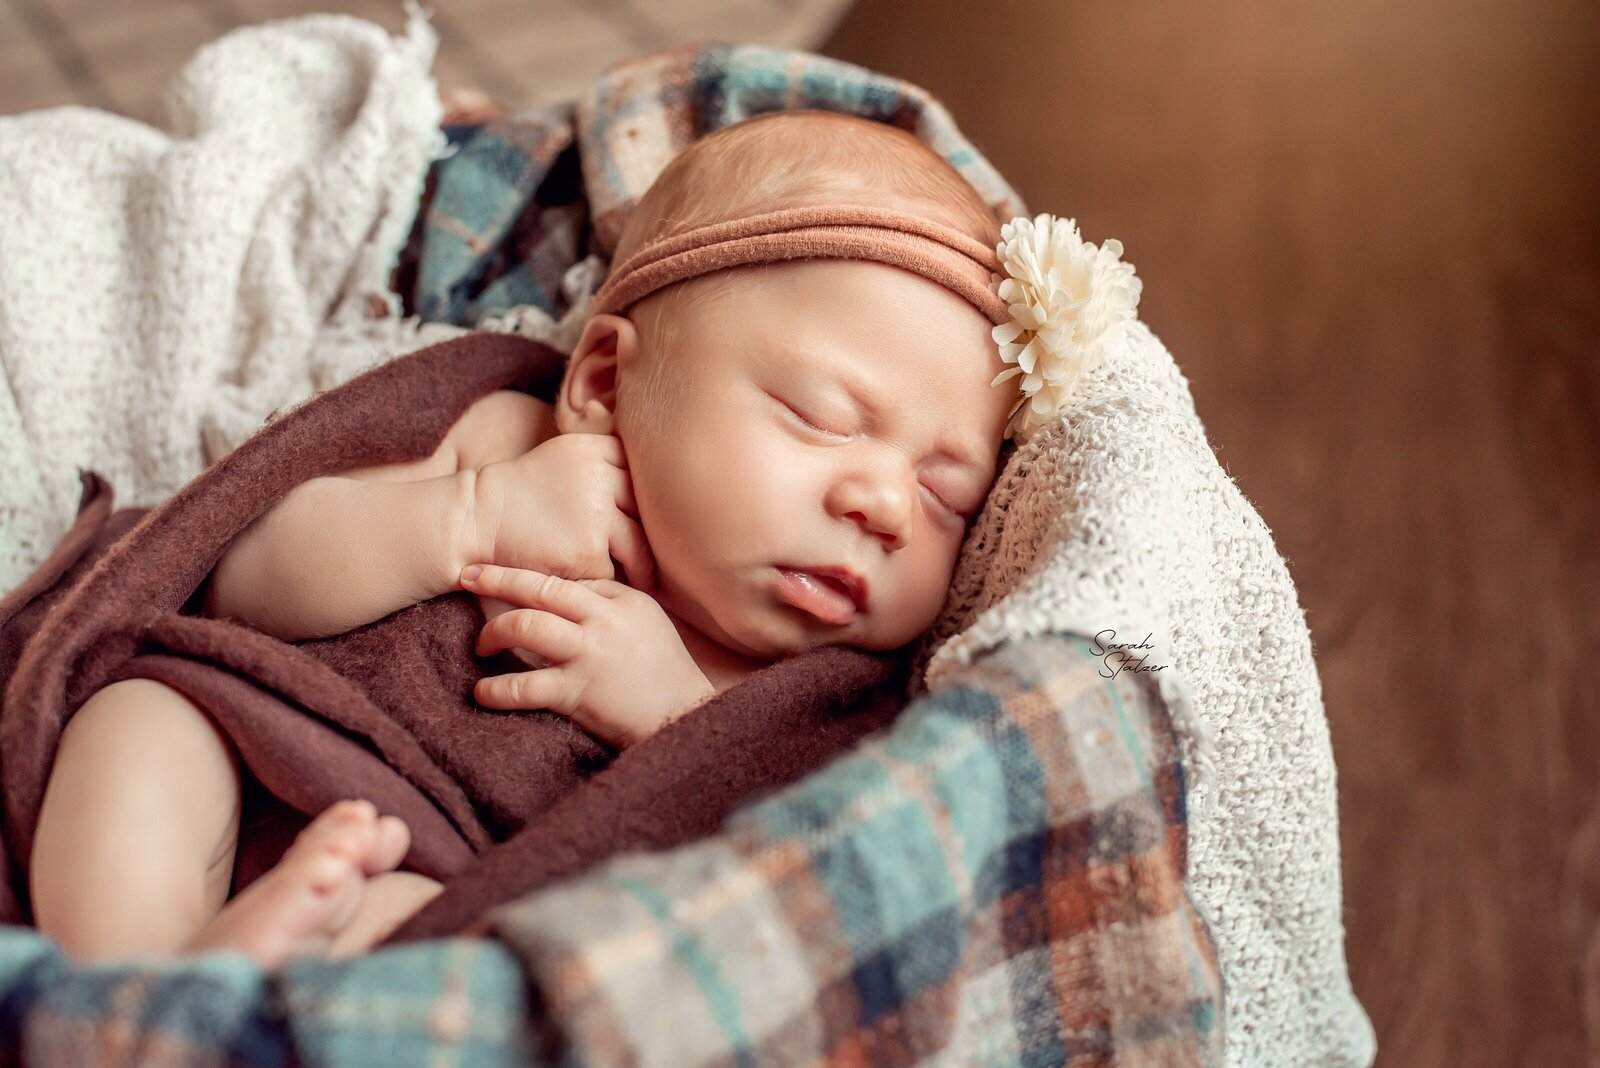 edmonton-newborn-photographer-8724